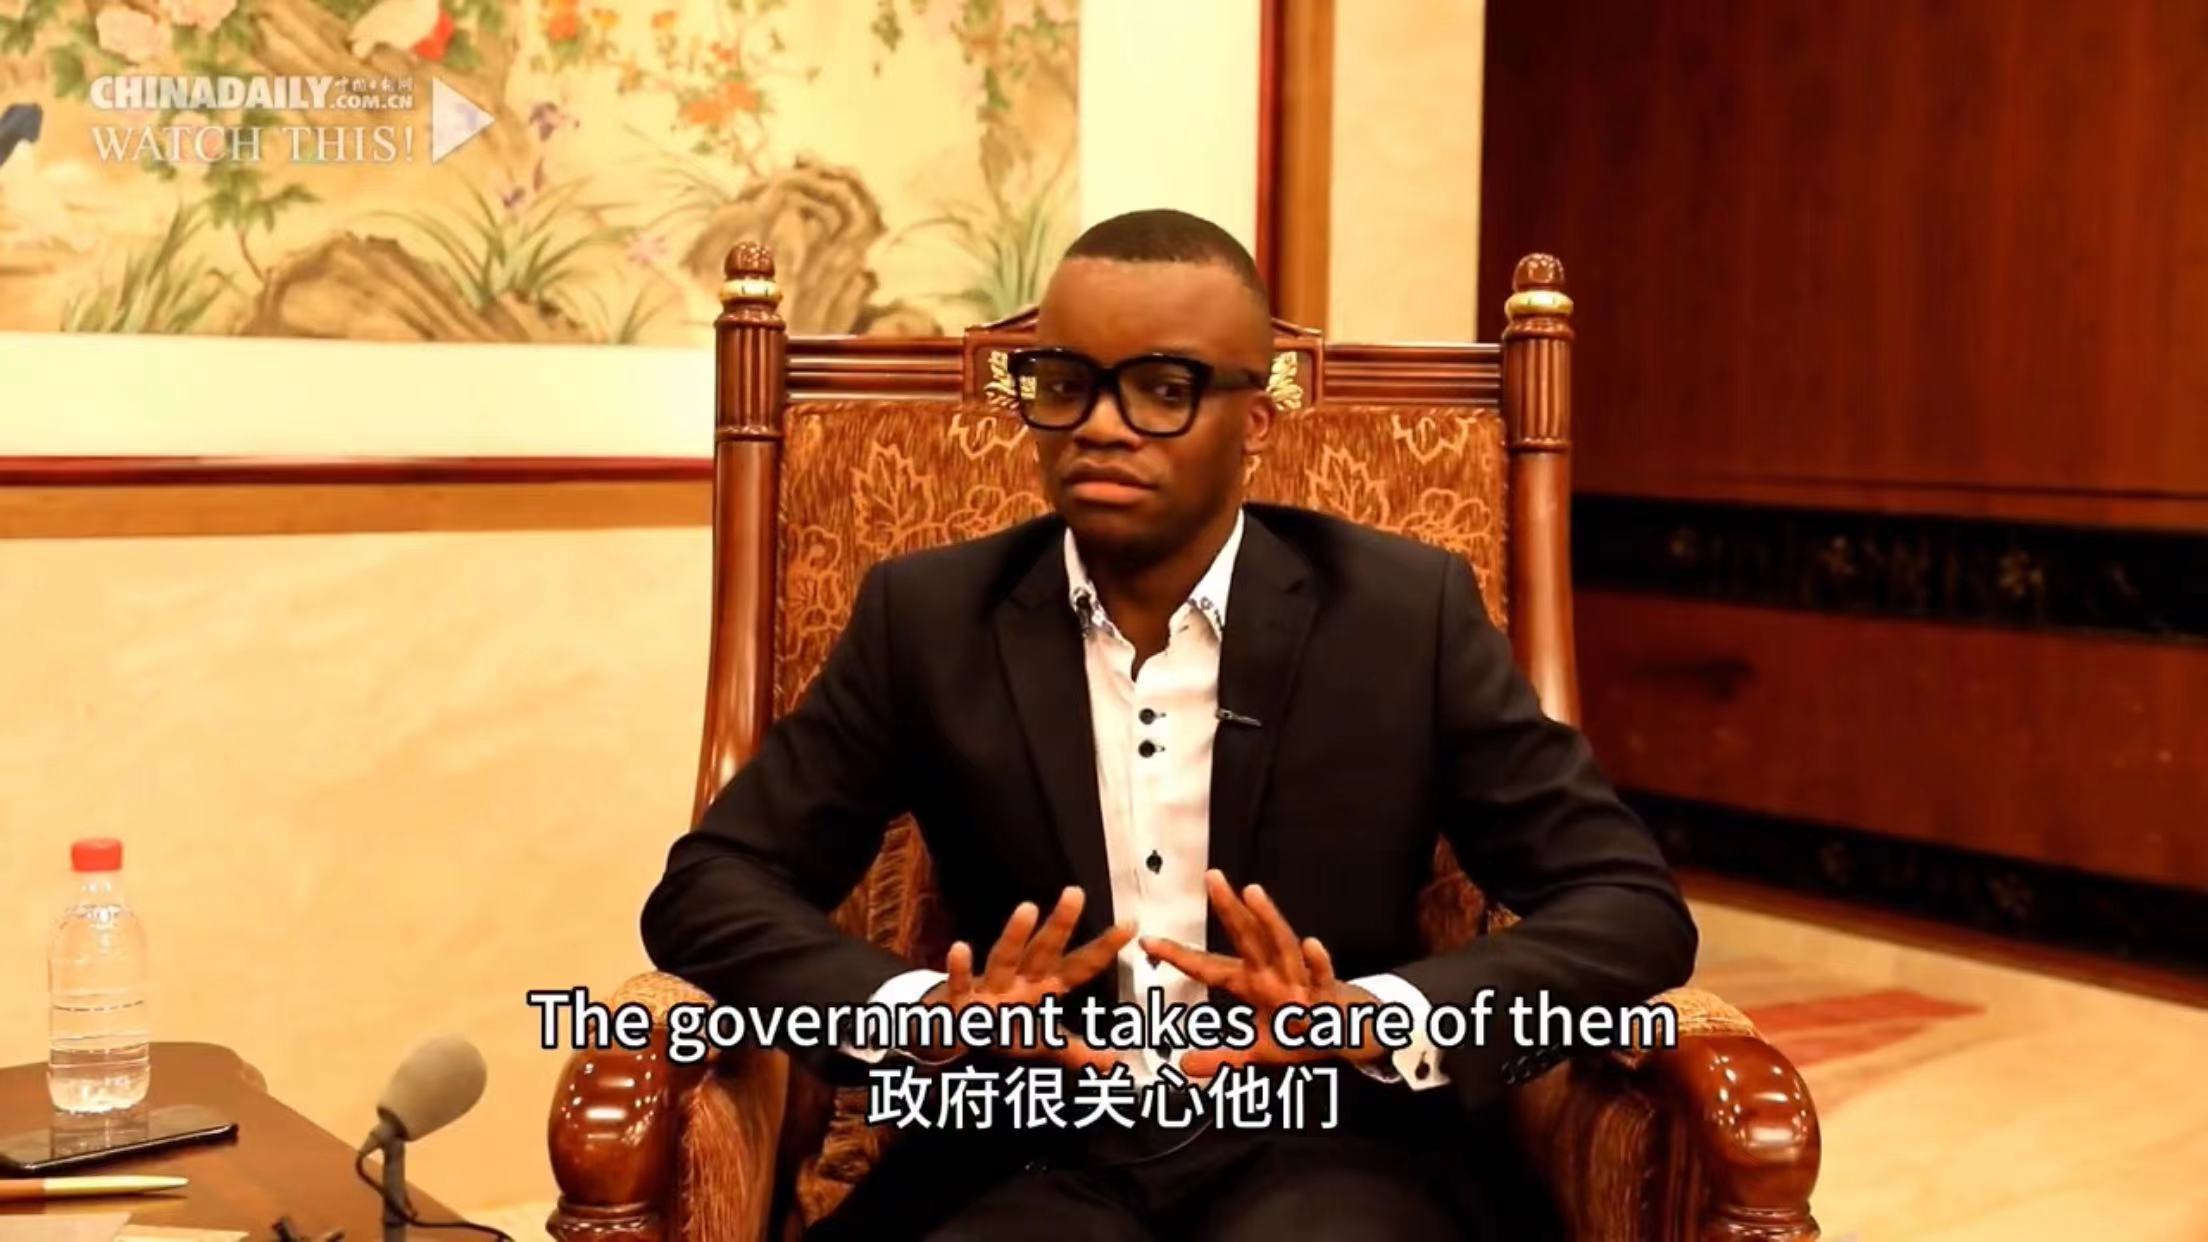 تجربه شیرین دانشجوی اهل کامرون از سفر به شین جیانگ + ویدئوا